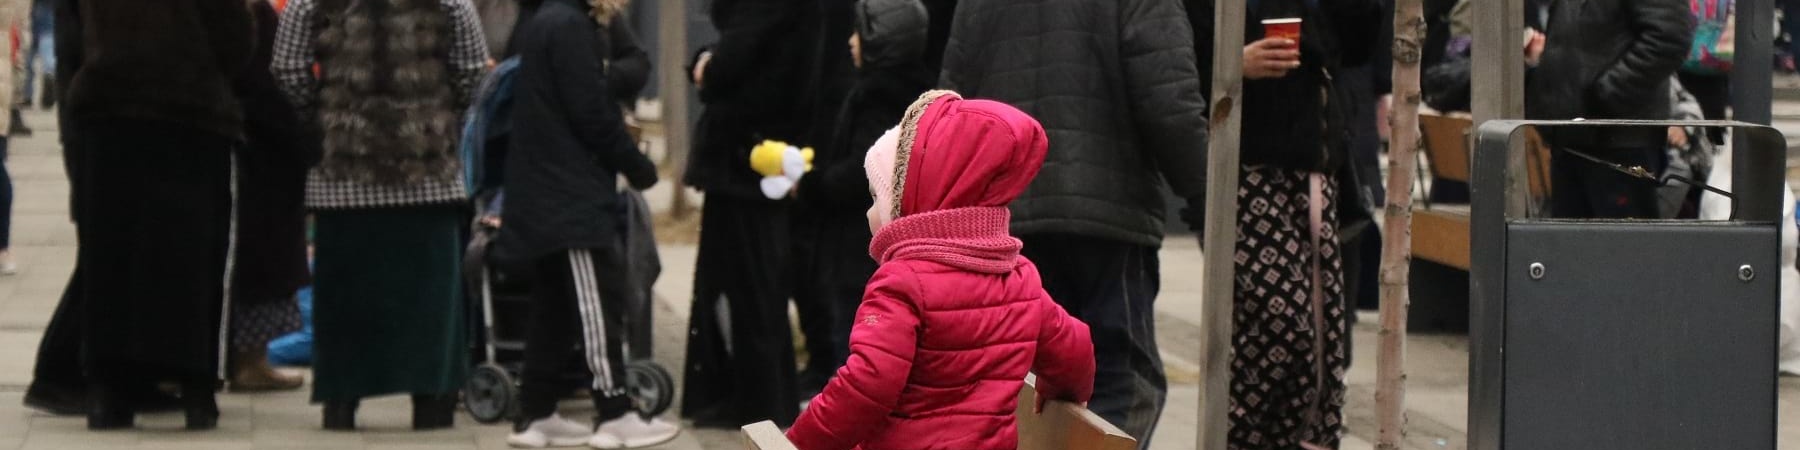 Una bambina con cappotto rosa di spalle è in ginocchio su una panchina. Davanti a lei una folla di persone.